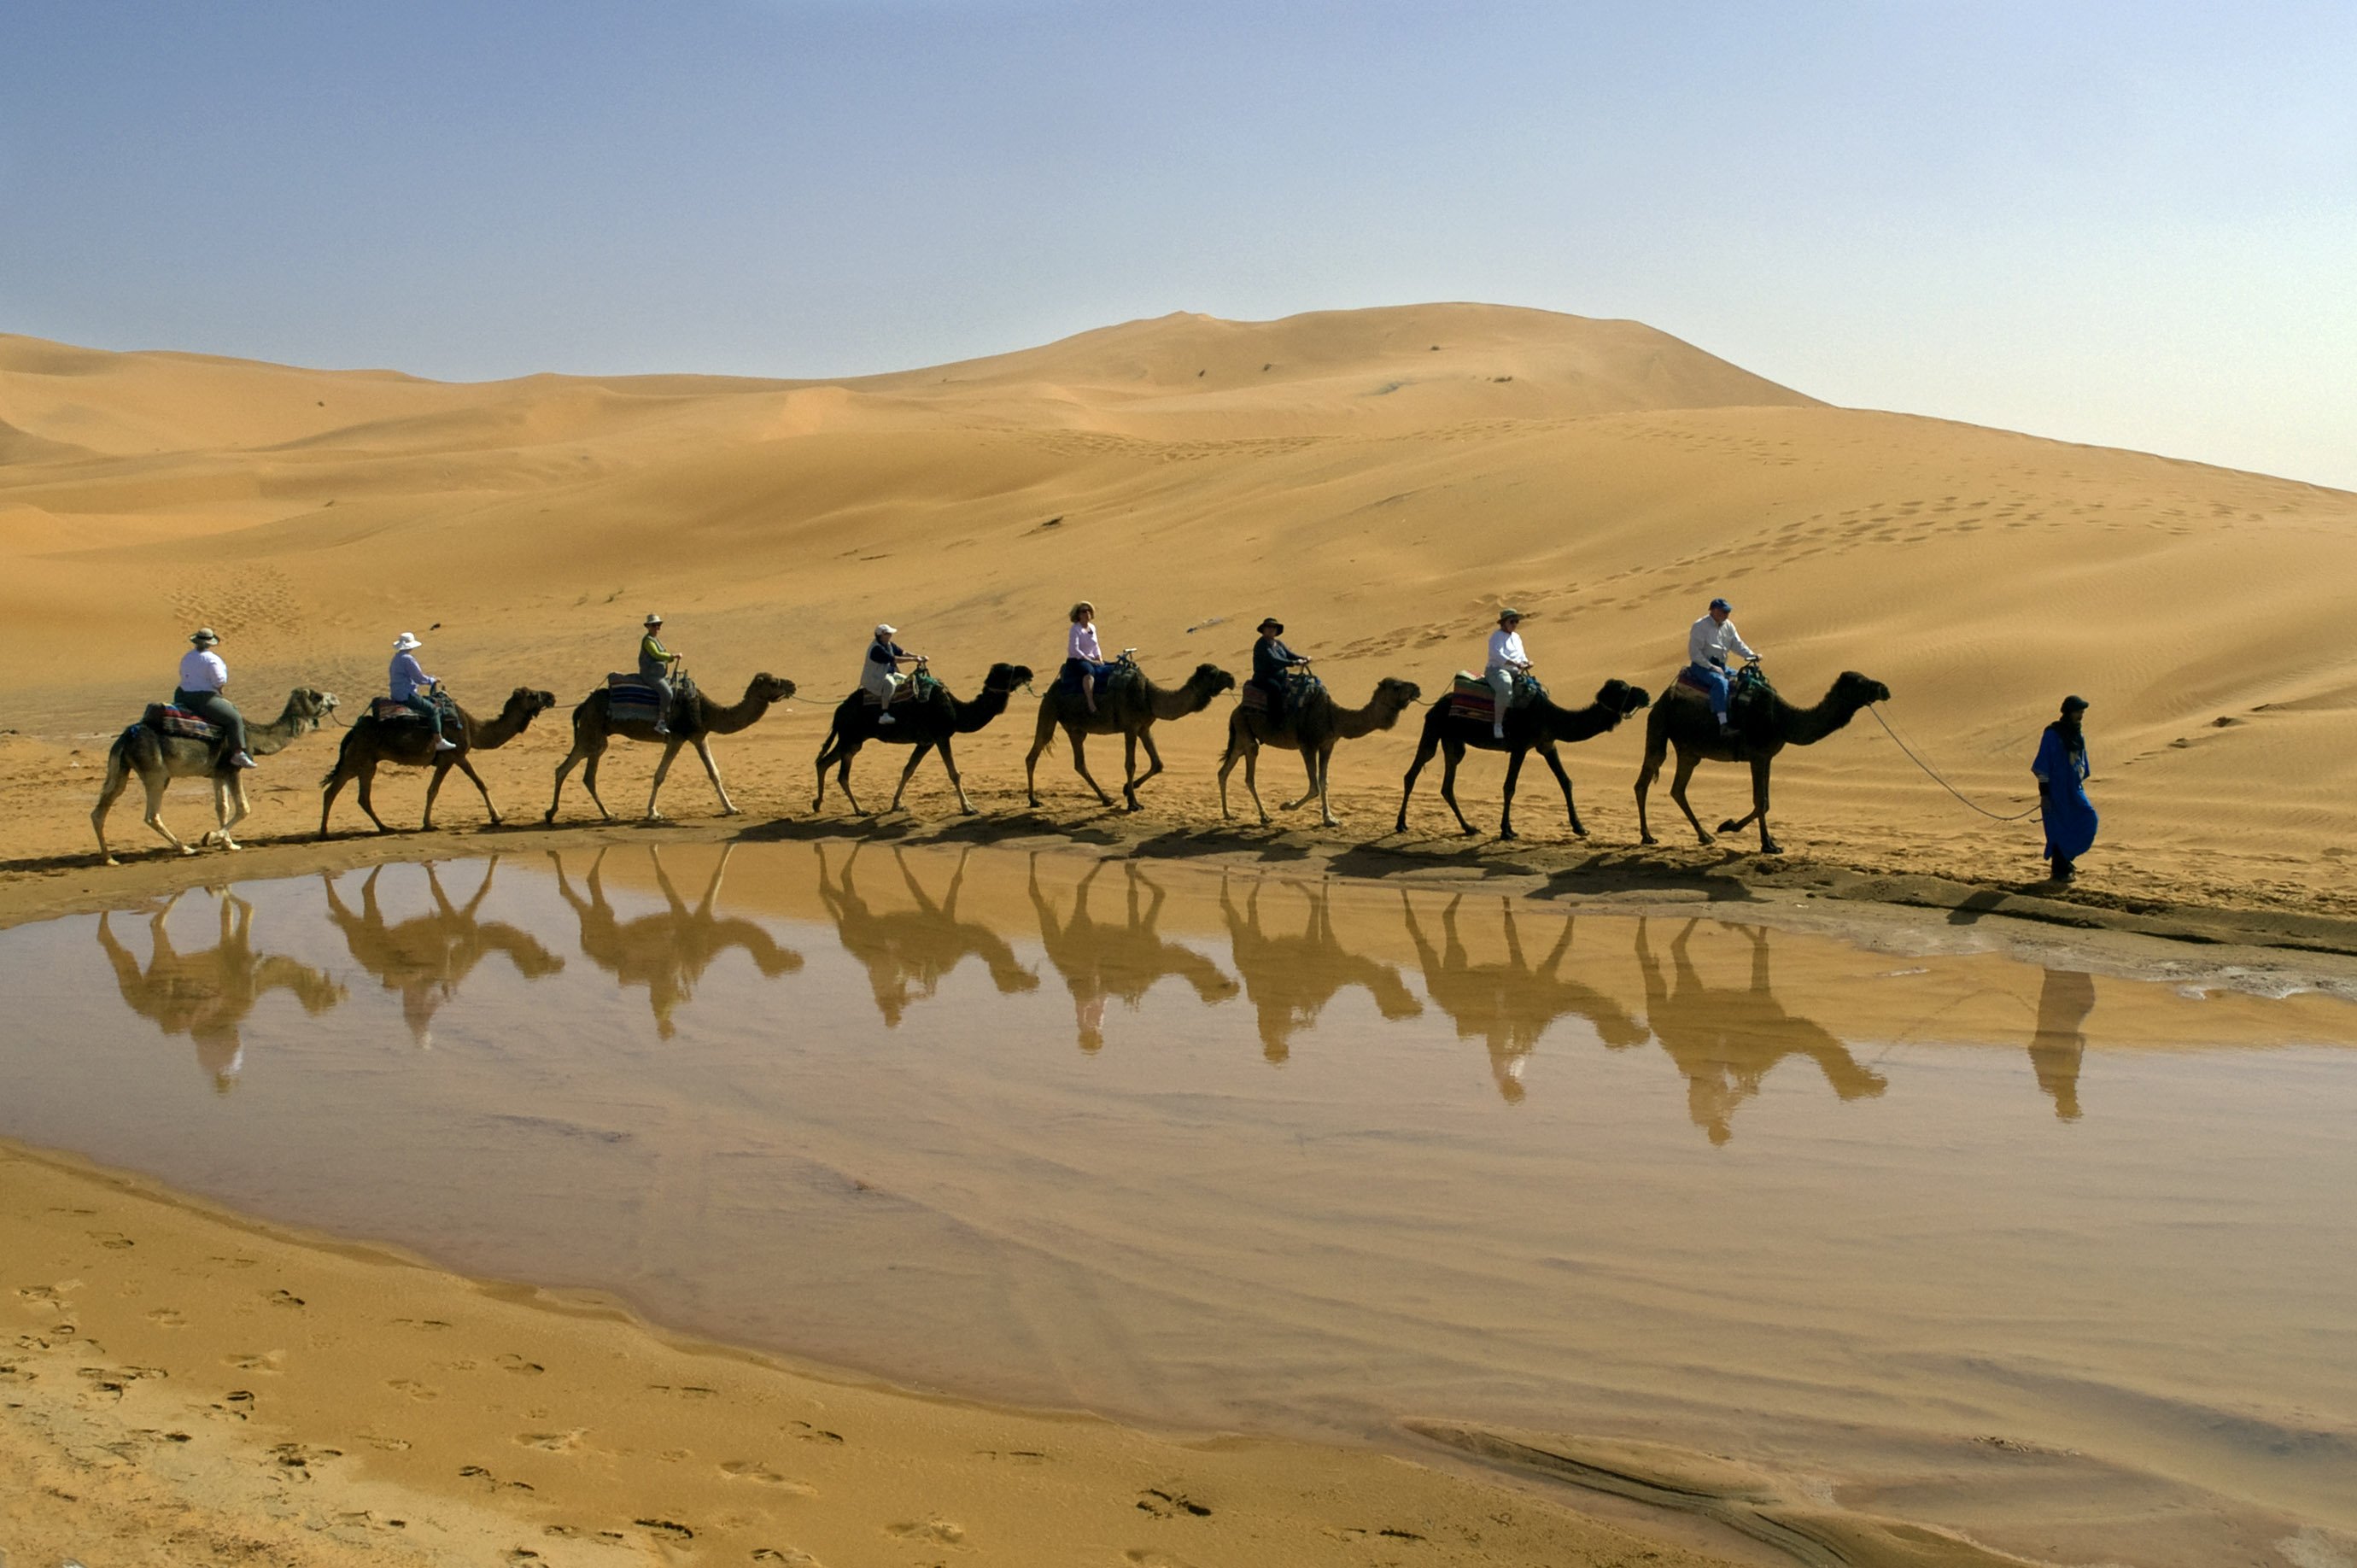 Караван картинка. Караван верблюдов в пустыне. Айдаркуль Верблюды. Караван с верблюдами в пустыне. Верблюд в пустыне.